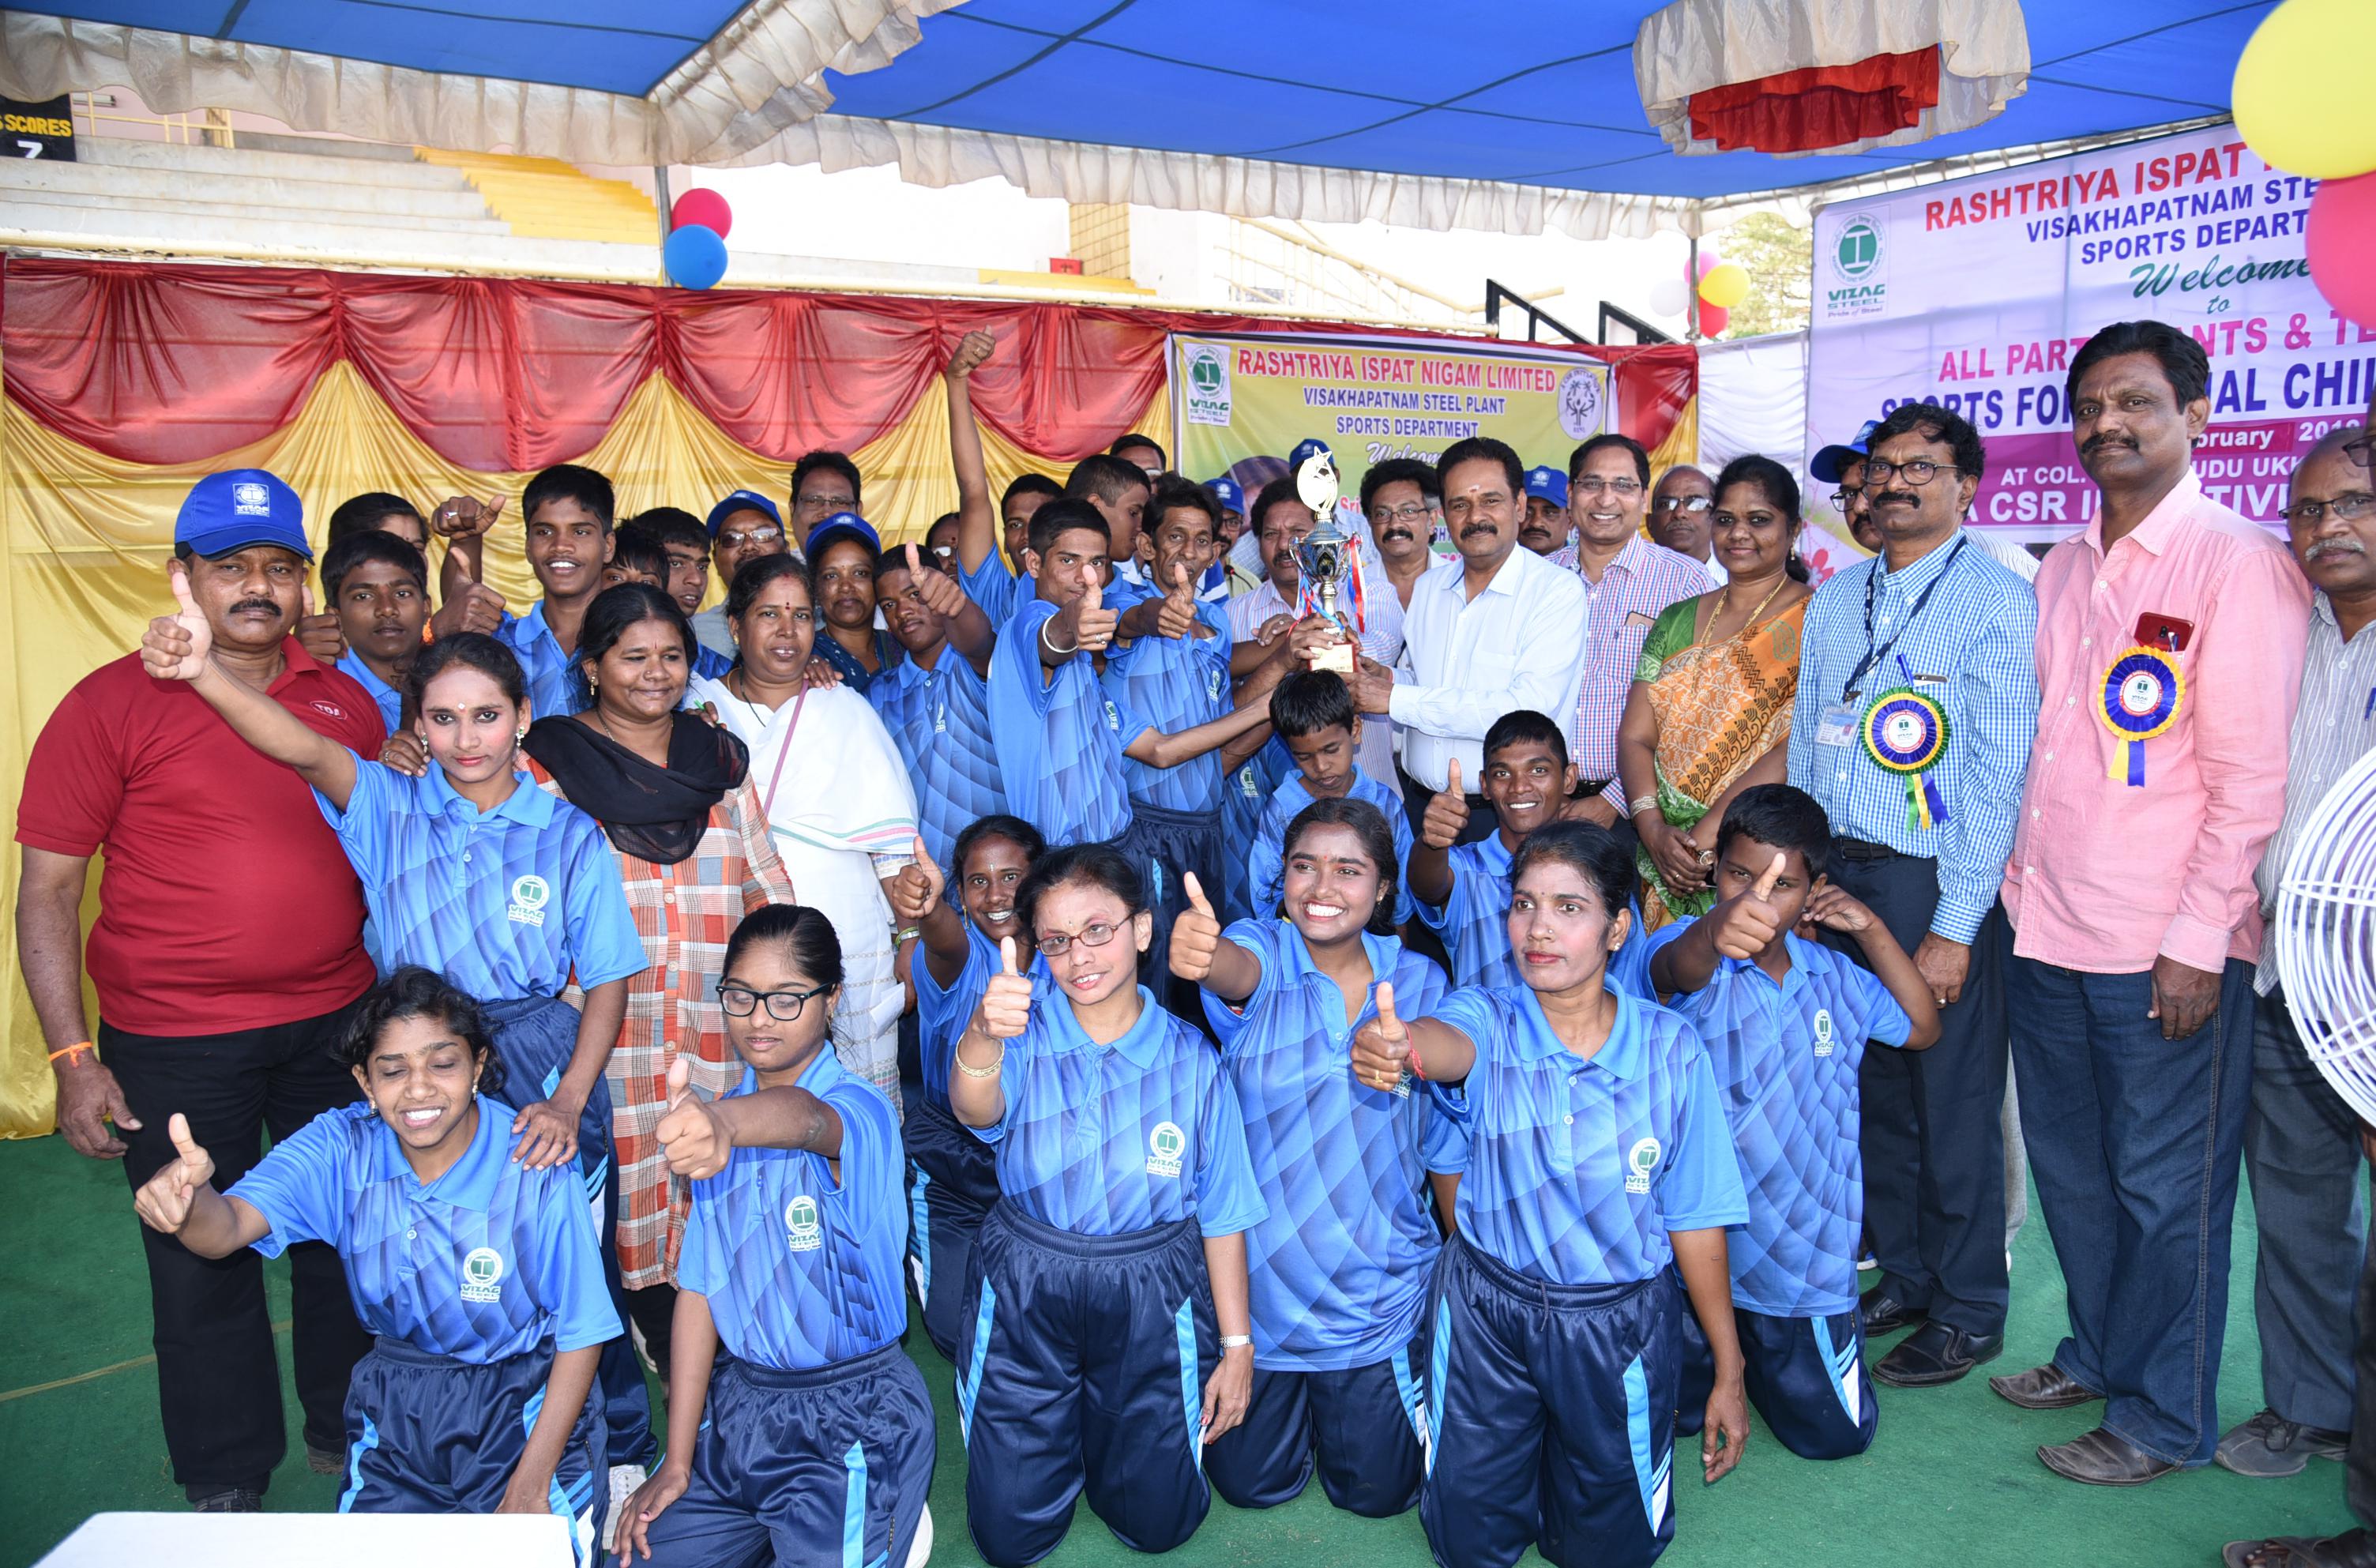 RINL conducts sports for Special Children in Ukkunagaram